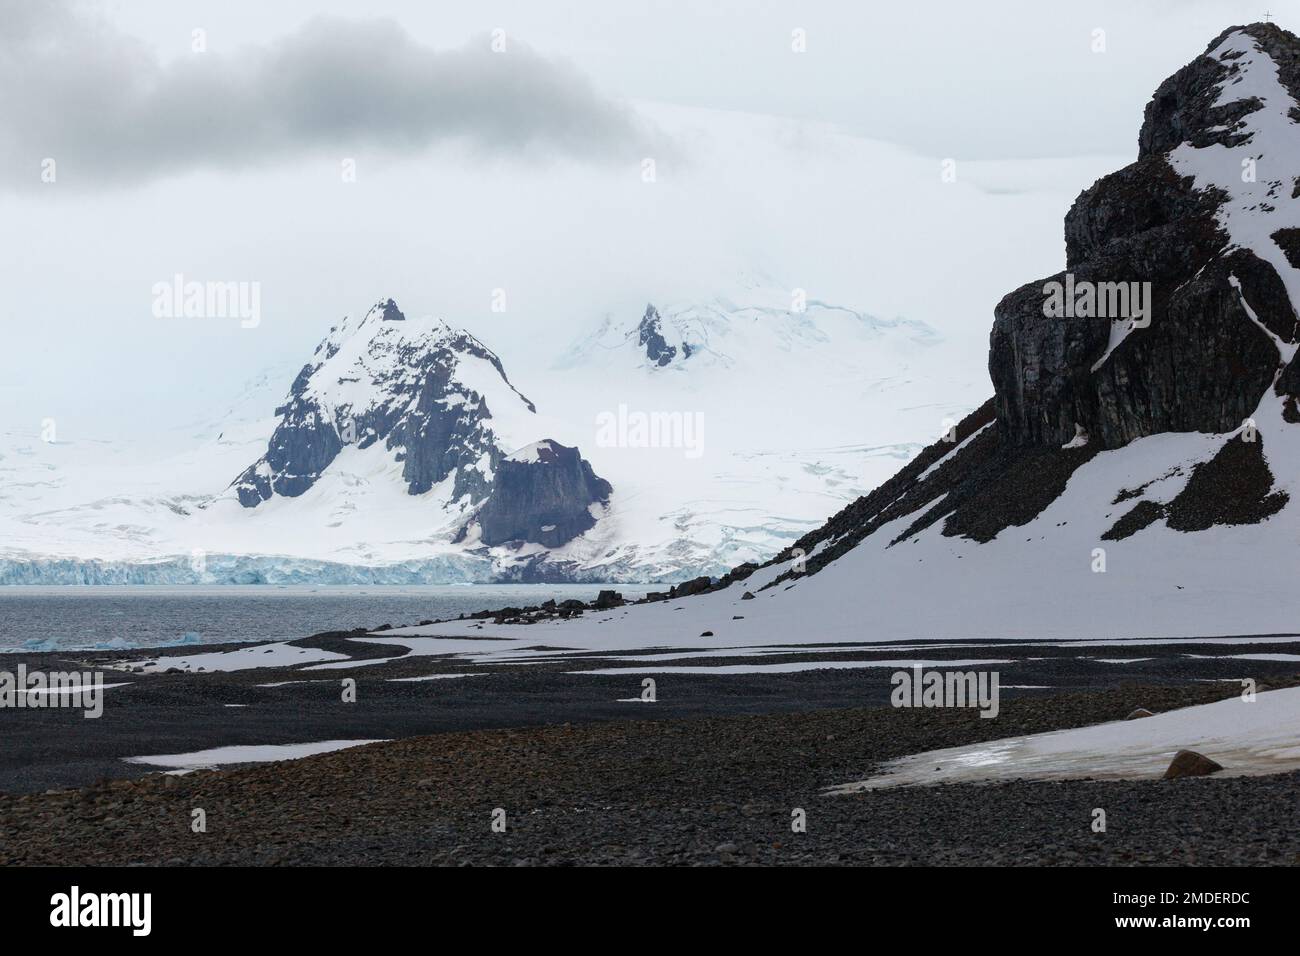 Die sich ändernden Wetterbedingungen in der Antarktis führen zu großen Schwankungen der etablierten saisonalen Rhythmen und Veränderungen der physischen Umgebung Stockfoto